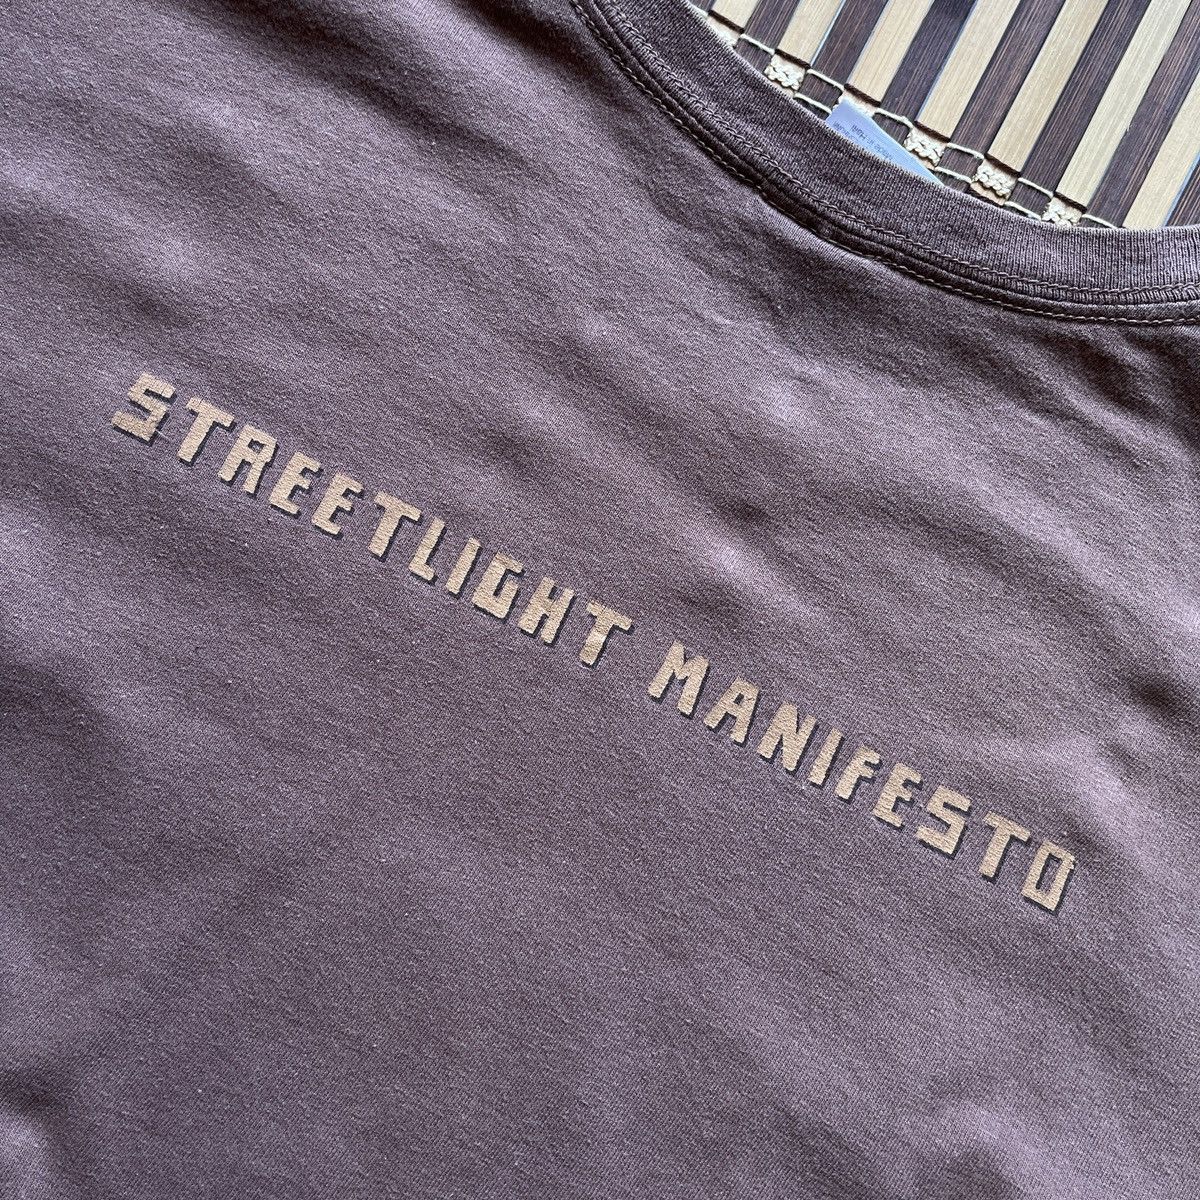 Vintage - Punk Band USA Streetlight Manifesto Band Tees - 15